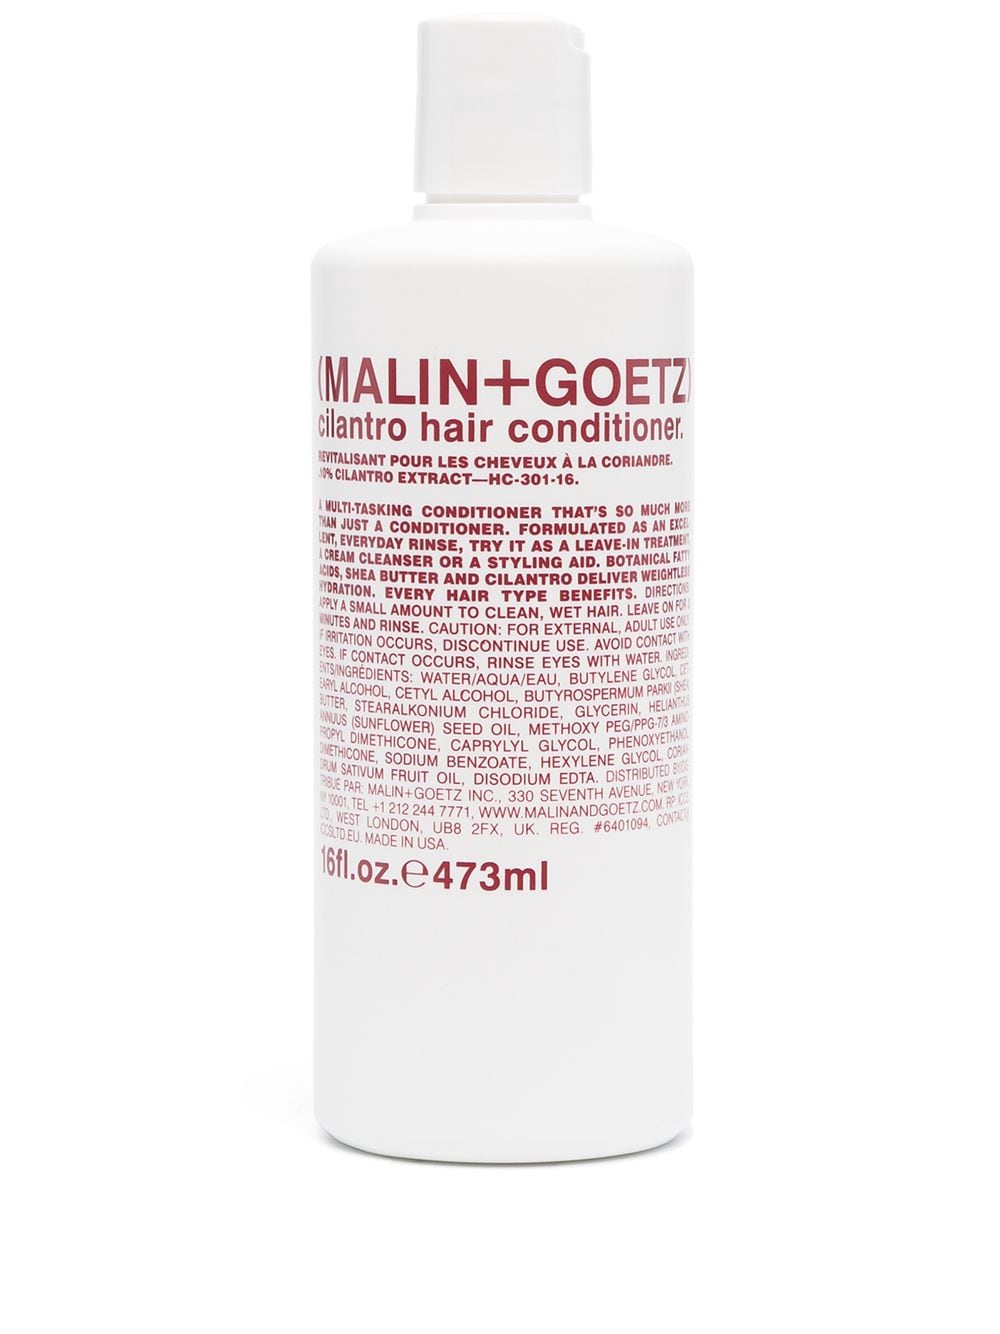 MALIN + GOETZ CILANTRO HAIR CONDITIONER